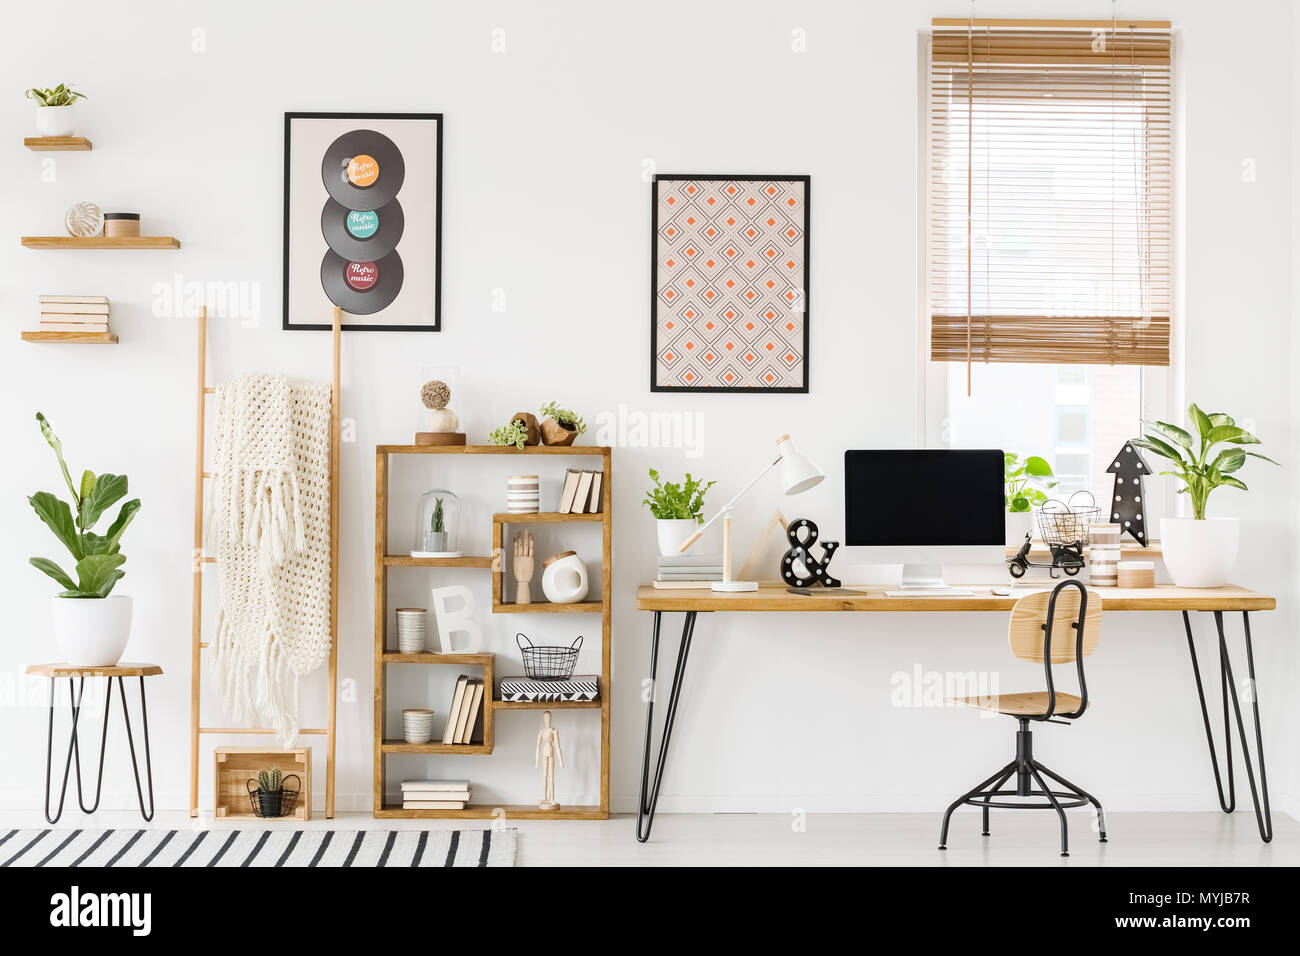 Real Photo eines Arbeitsplatzes Interieur mit einem Computer auf einem Schreibtisch  neben einen Stuhl und ein Regal mit Ornamenten, Poster an der Wand und ein  Fenster mit Jalousien Stockfotografie - Alamy